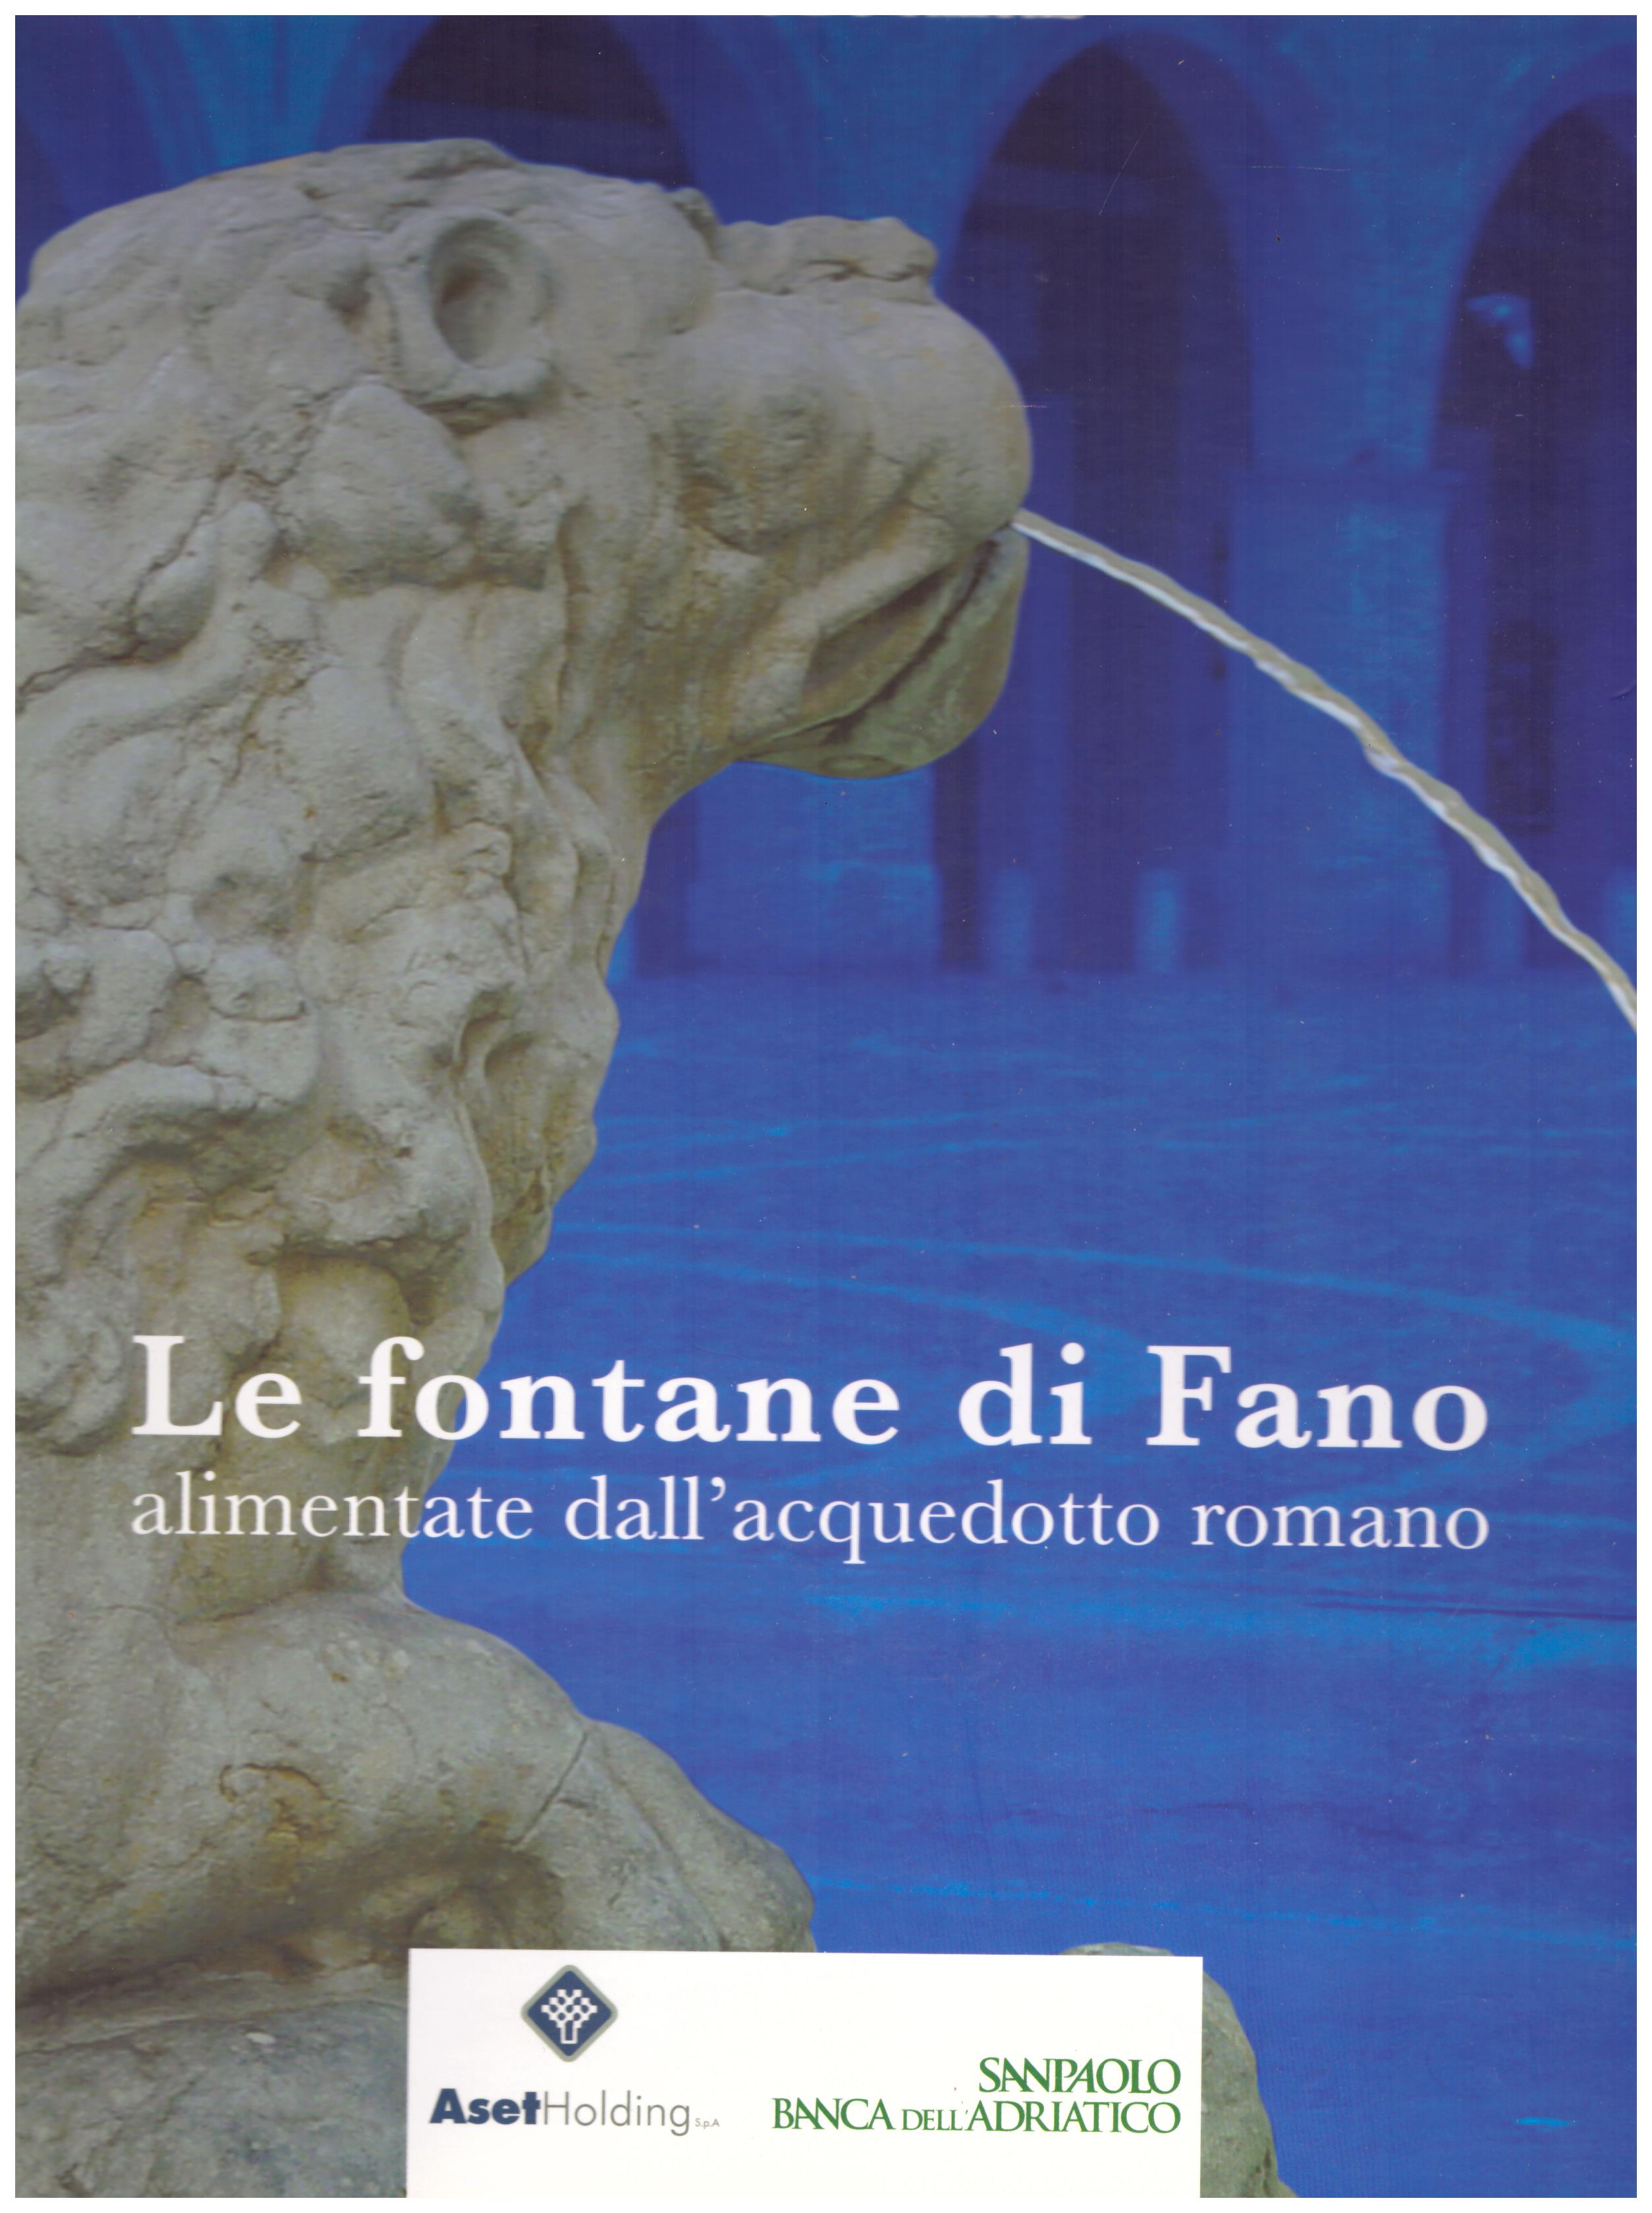 Titolo: Le fontane di Fano     Autore: Luciano De Sanctis    Editore: aset holding